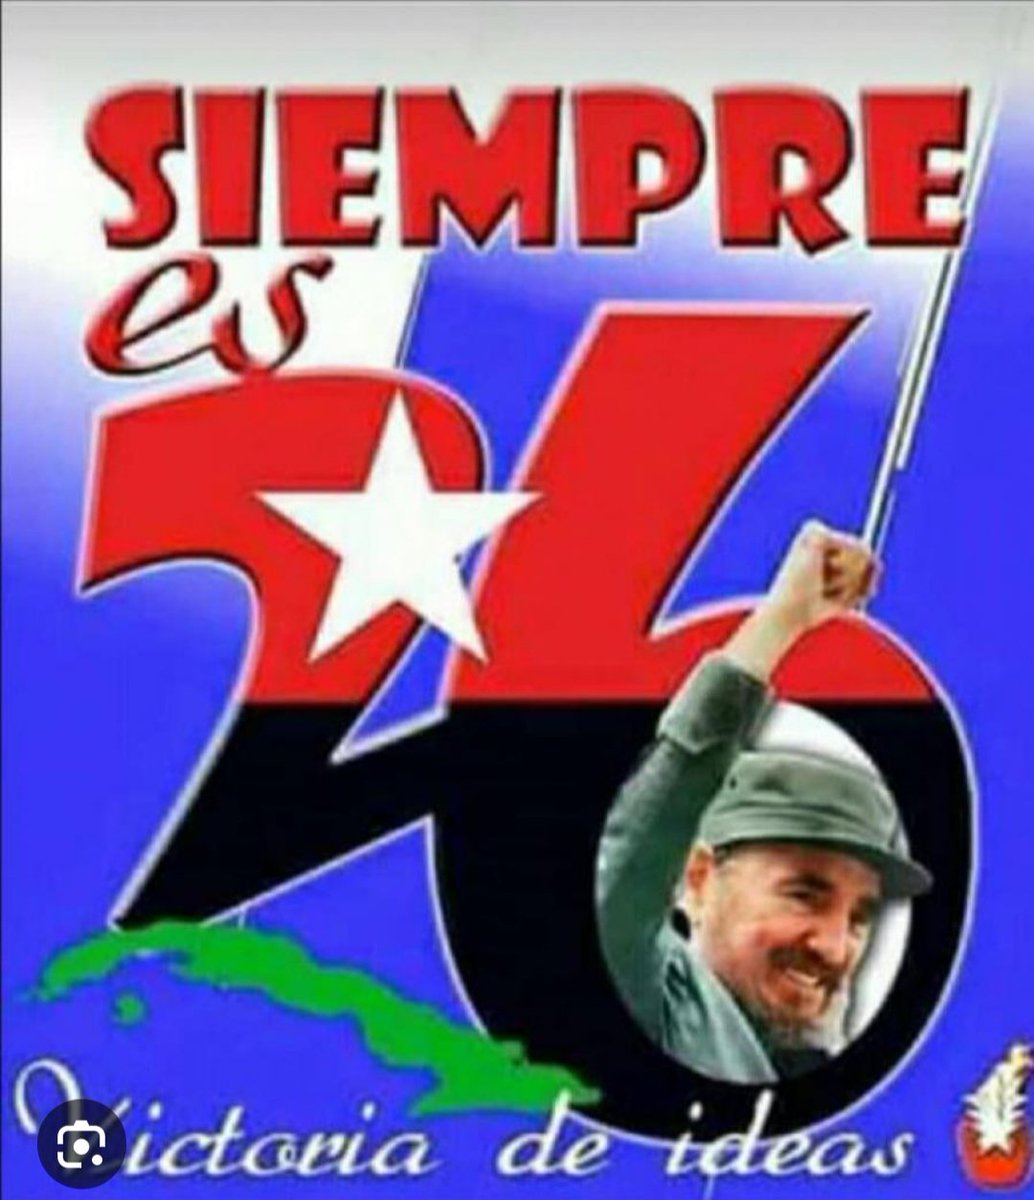 El Movimiento (M-26-7) fue una organización política y militar cubana creada en 1953 para combatir la dictadura de Fulgencio Batista. Liderada por Fidel Castro  #Cuba #CubaCoopera @Colaboracionqba @uccmcuba #ConTodosLaVictoria #70Moncada #ConLaFuerzaDelPueblo. #CubaCoopera